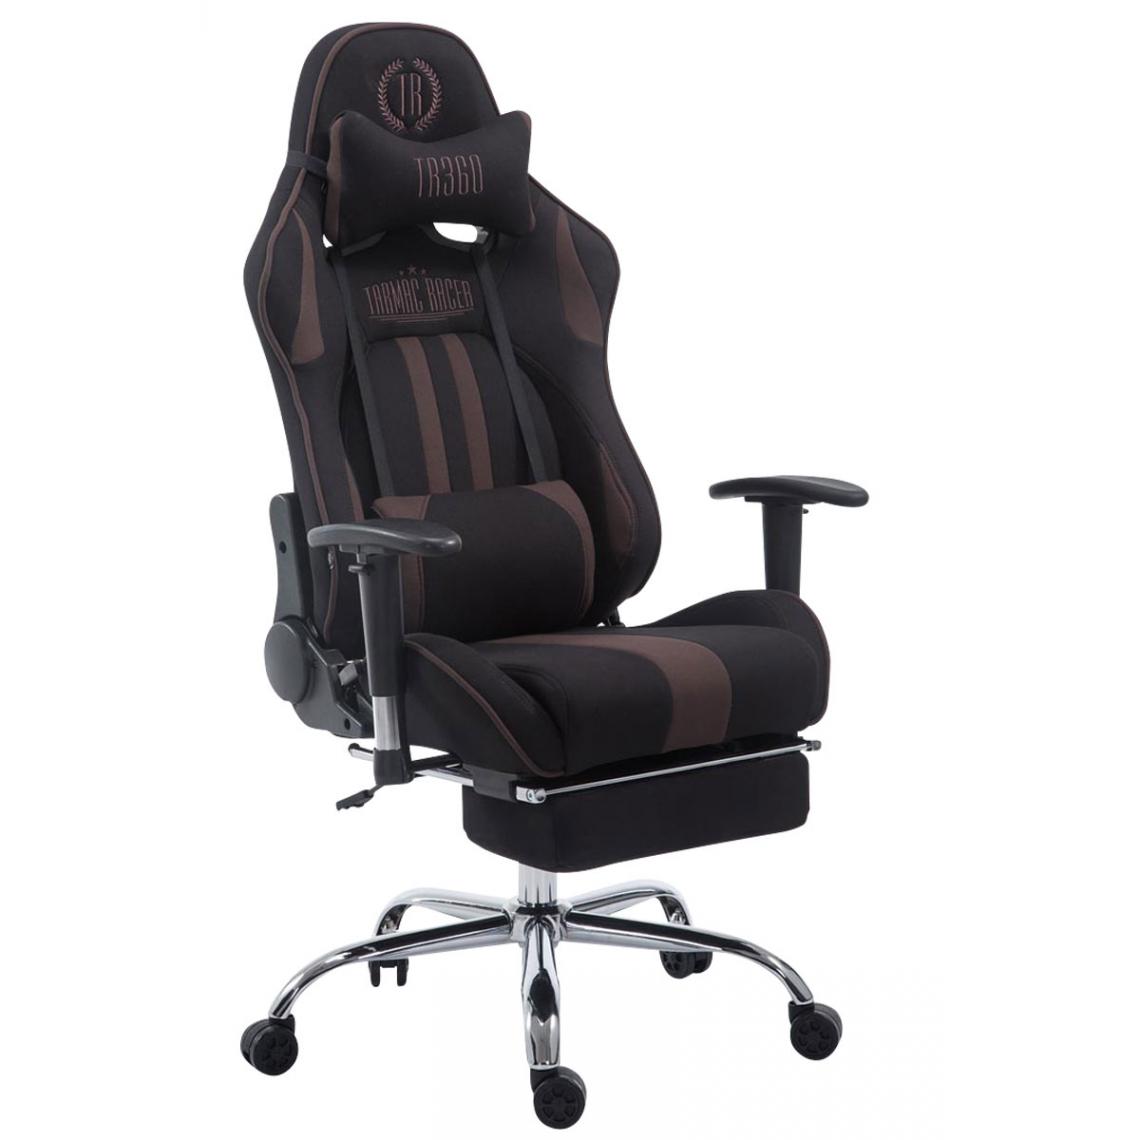 Icaverne - Superbe Chaise de bureau collection Luanda Limit V2 en tissu avec repose-pieds couleur noir marron - Chaises